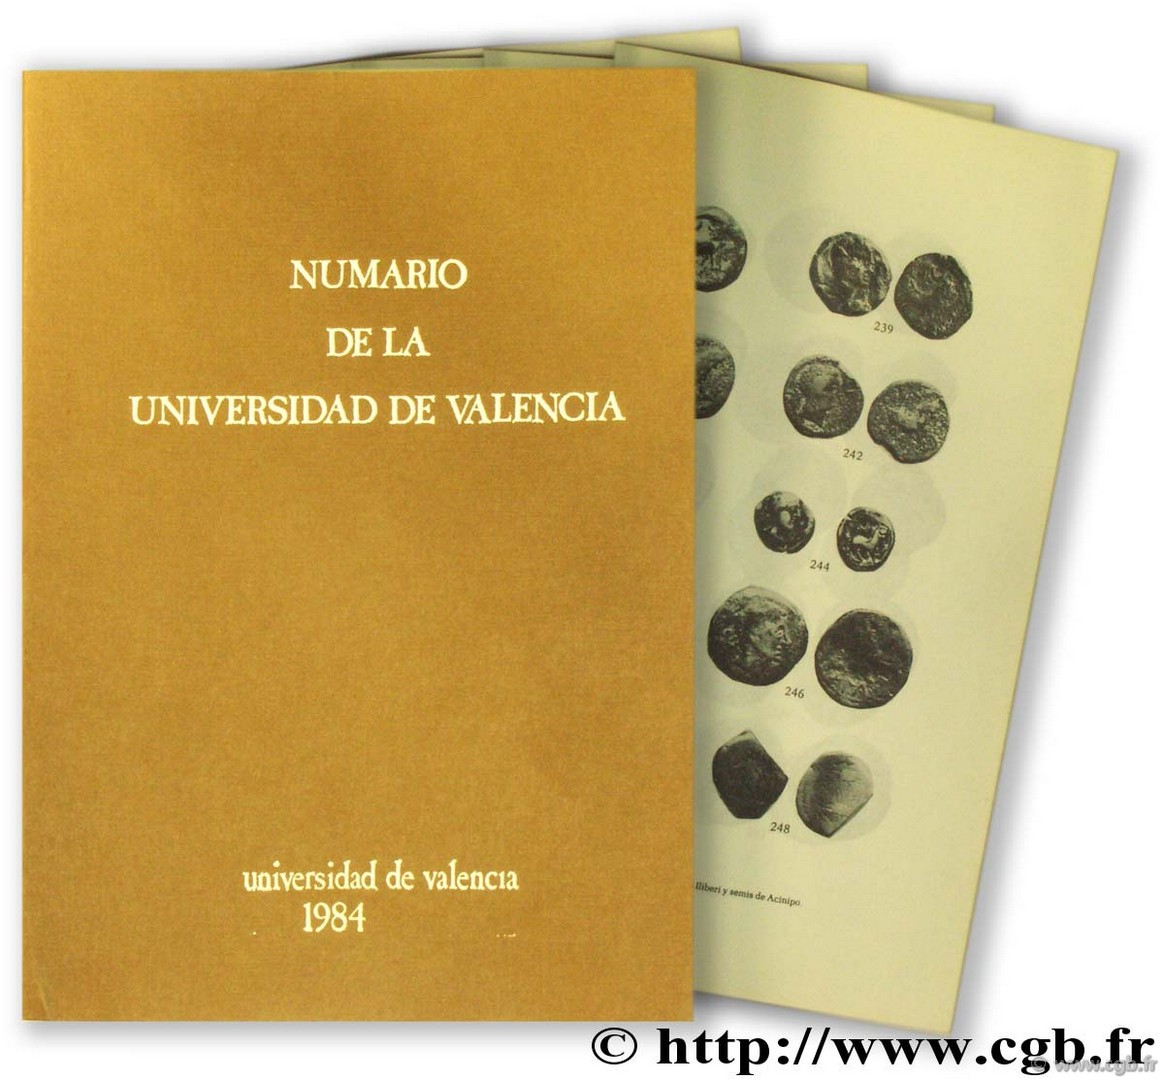 Numario de la Universidad de Valencia ARROYO ILERA R.